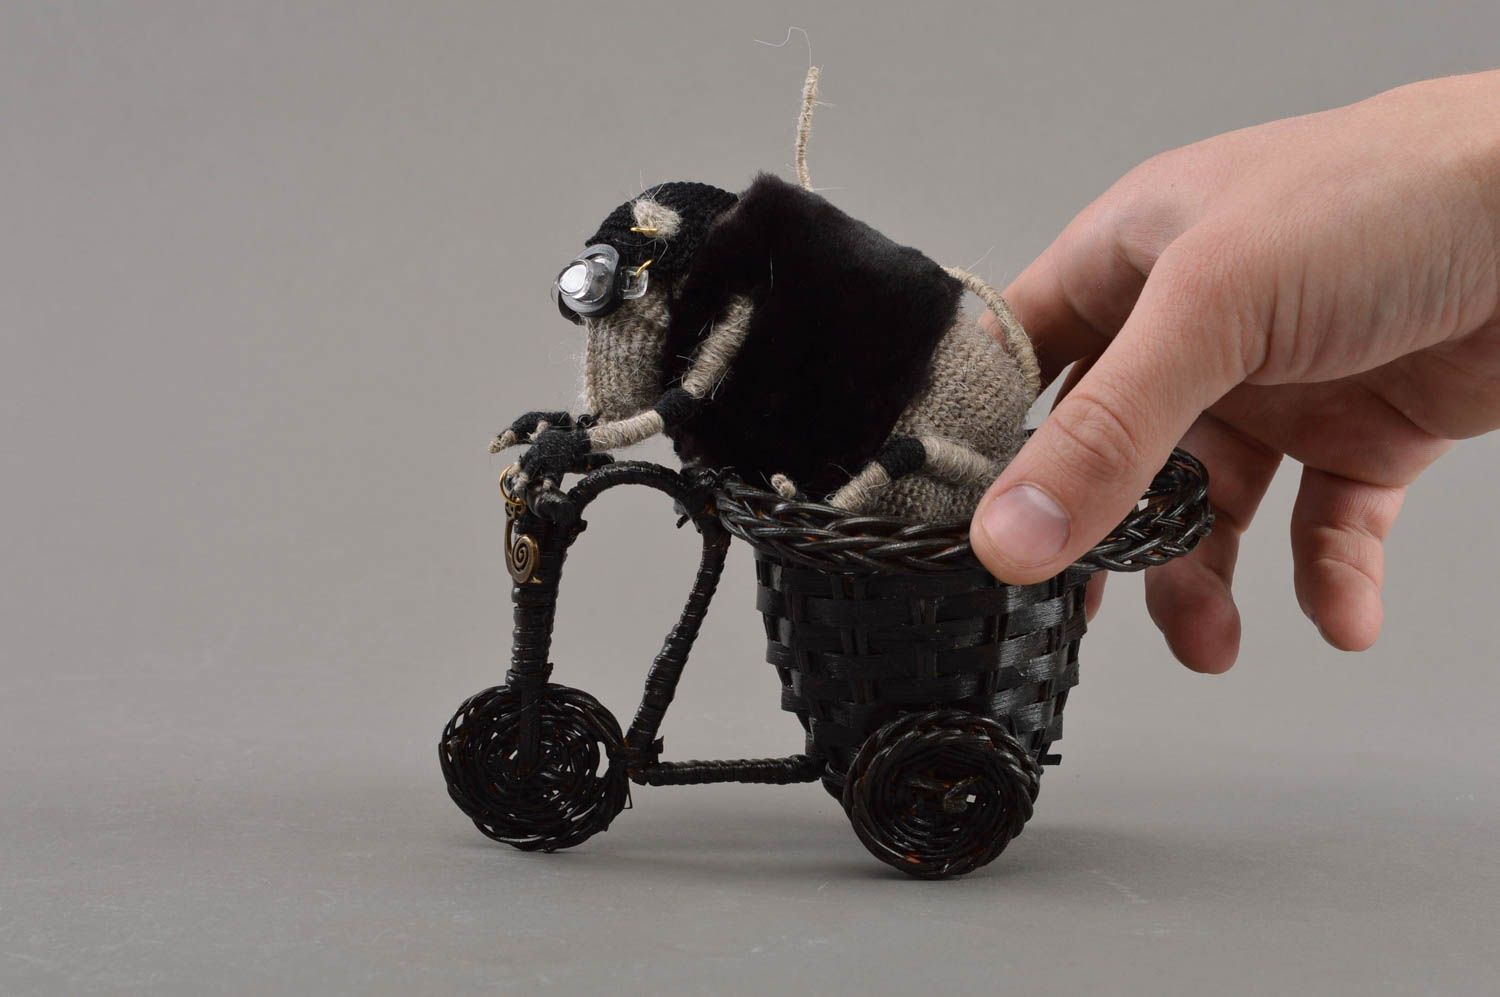 Мягкая вязаная игрушка скульптура крыса байкер на мотоцикле ручная работа фото 4